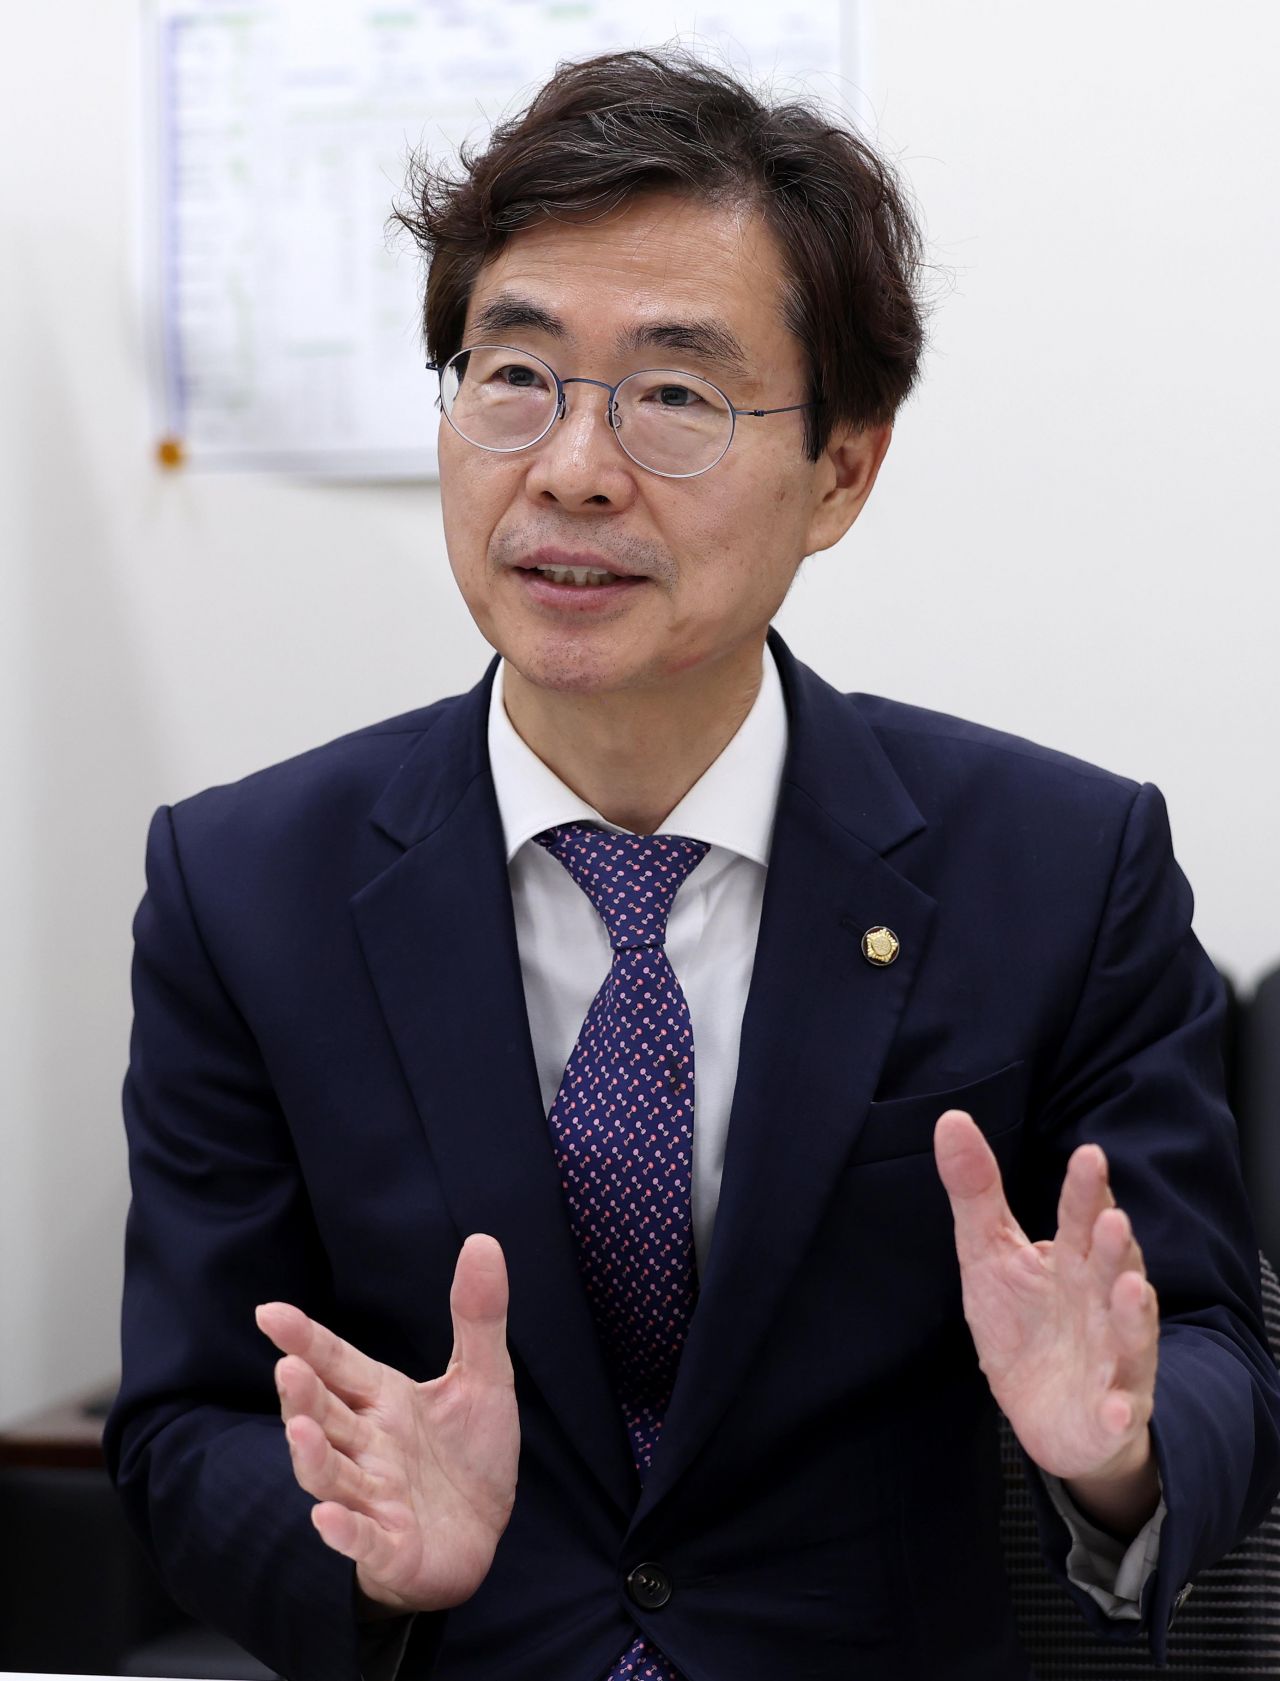 ‘차출설’ 부산 5선 조경태 의원, “지역구 지키겠다” 출사표